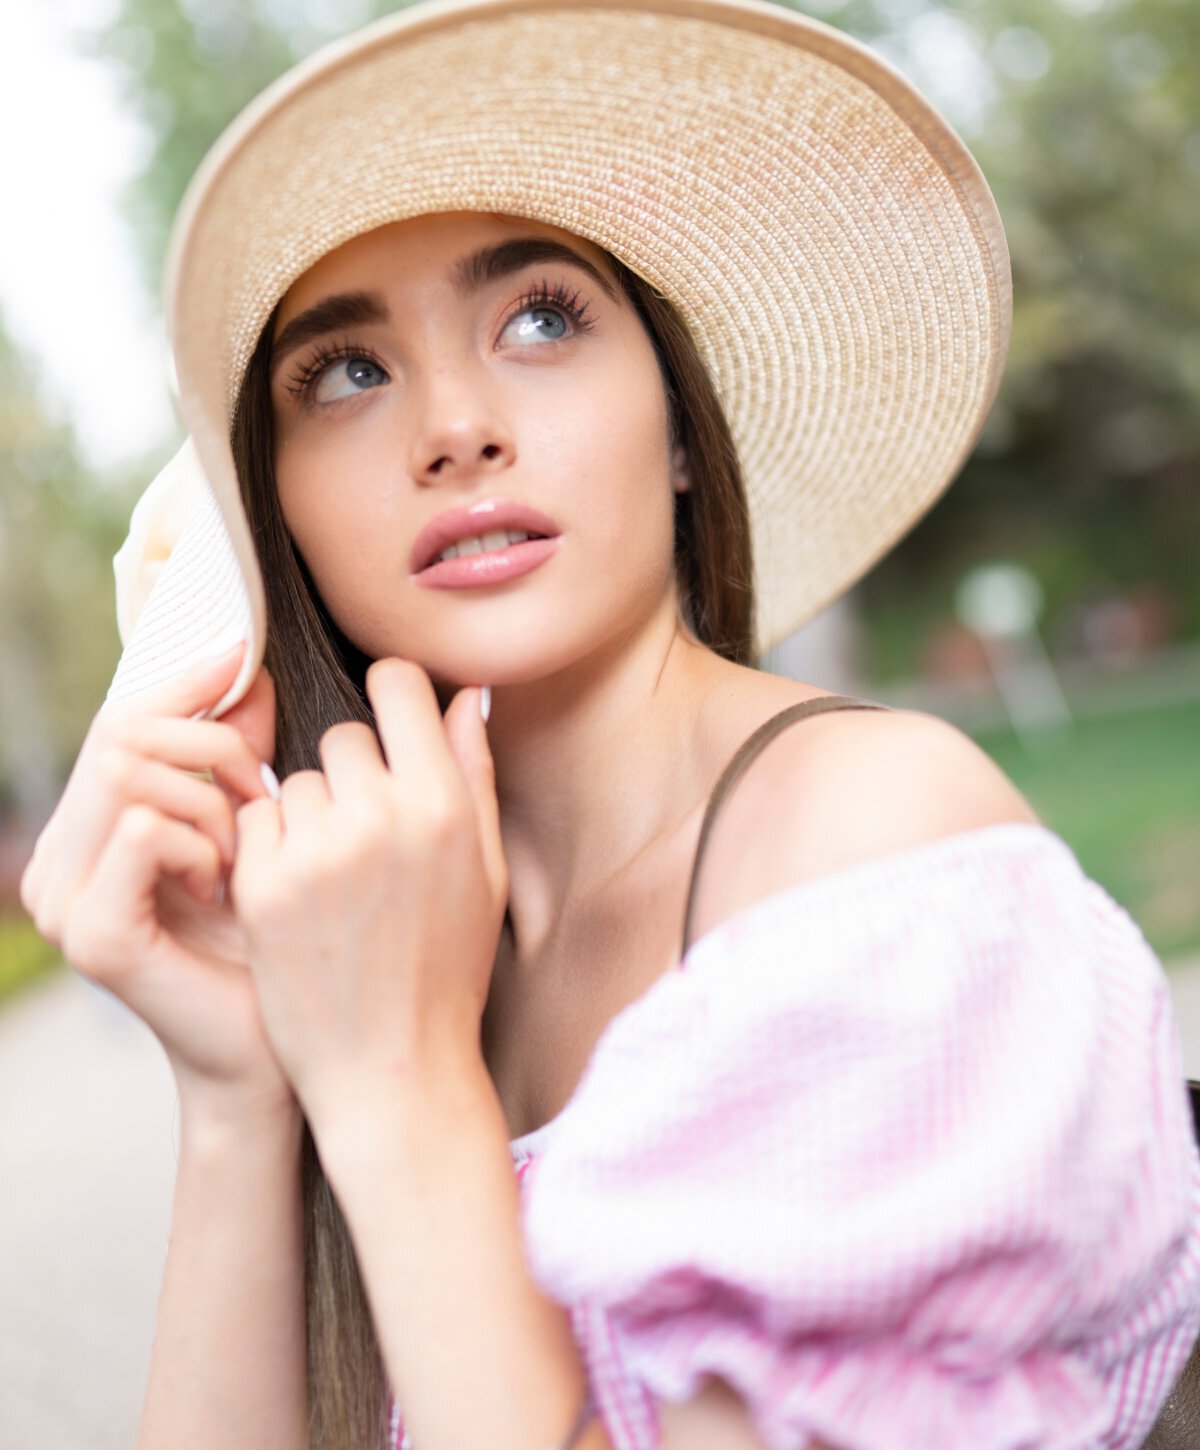 Los Angeles Restylane model wearing a hat